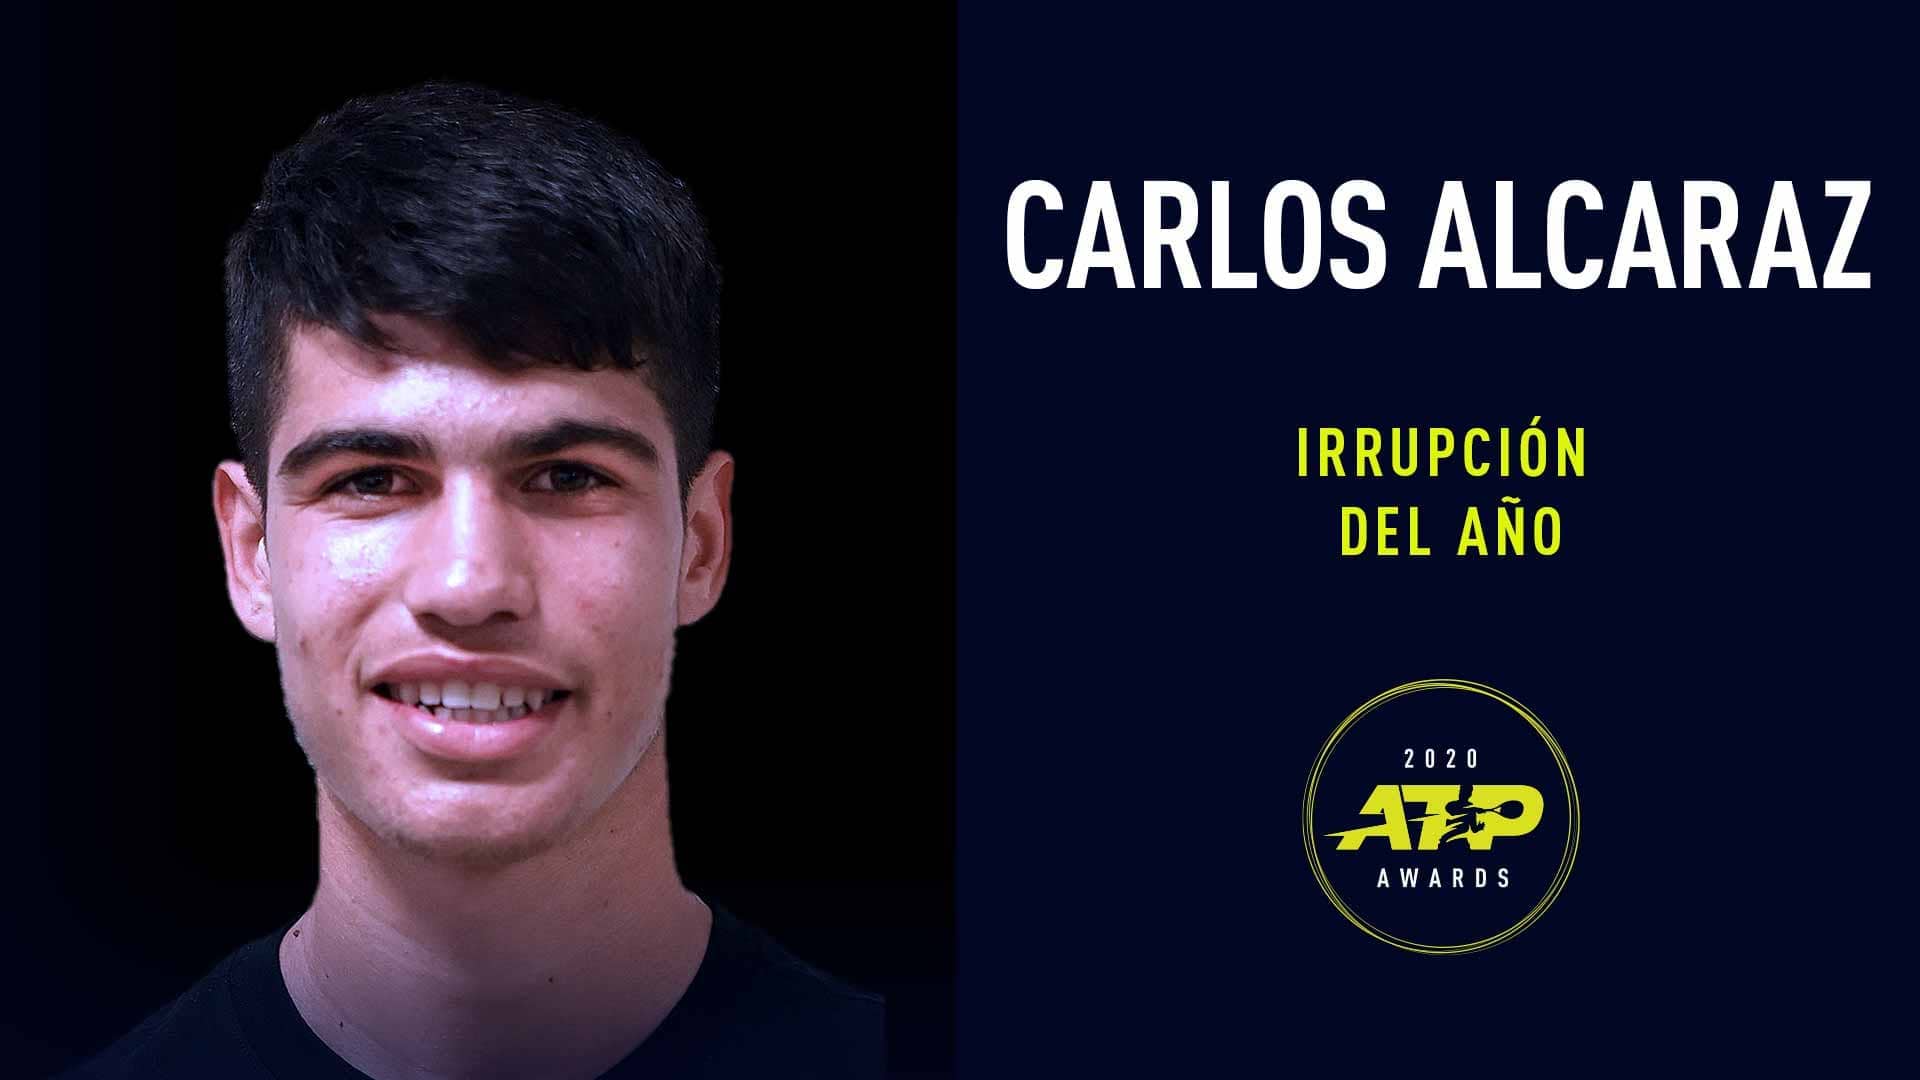 Carlos Alcaraz ganó la distinción Irrupción del año en los Premios ATP 2020.